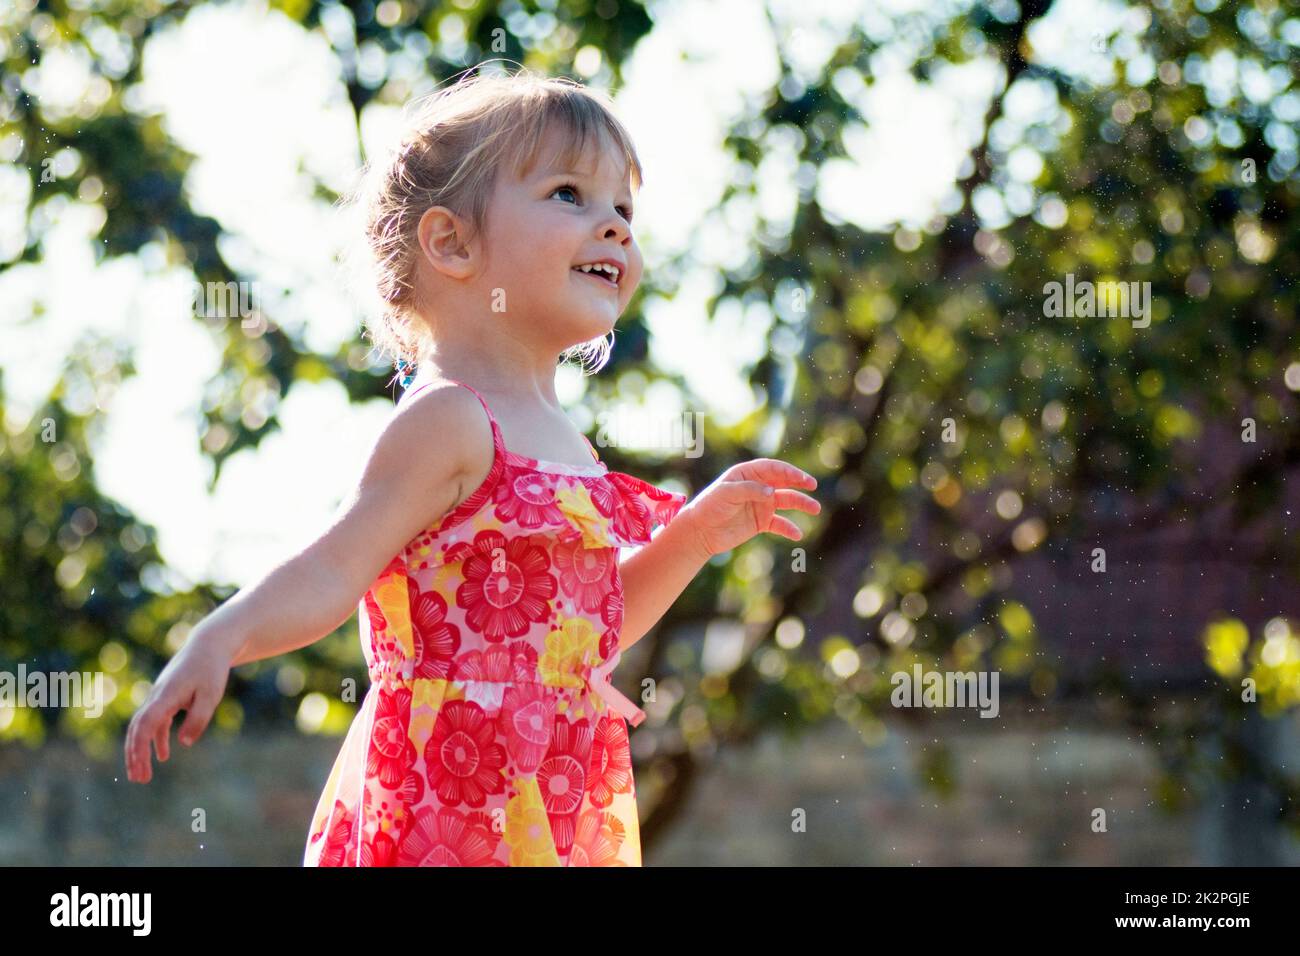 joyful little girl in dress Stock Photo